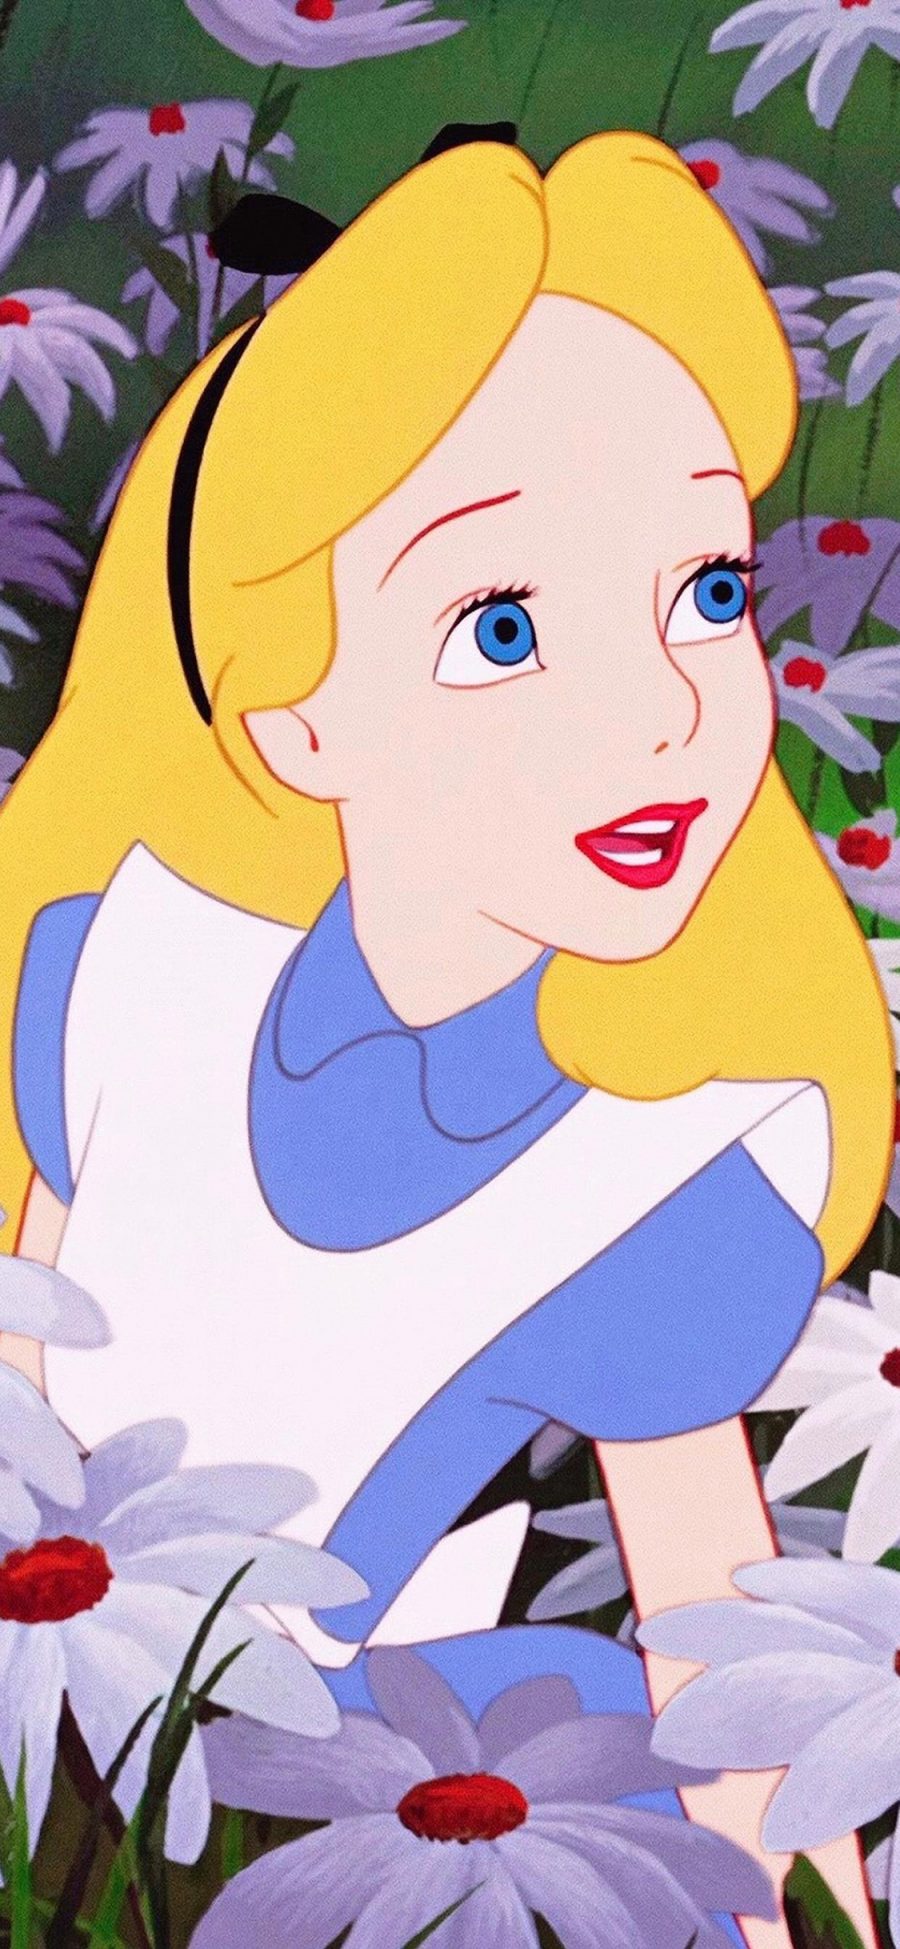 [2436×1125]迪士尼 公主 爱丽丝梦游仙境 苹果手机动漫壁纸图片